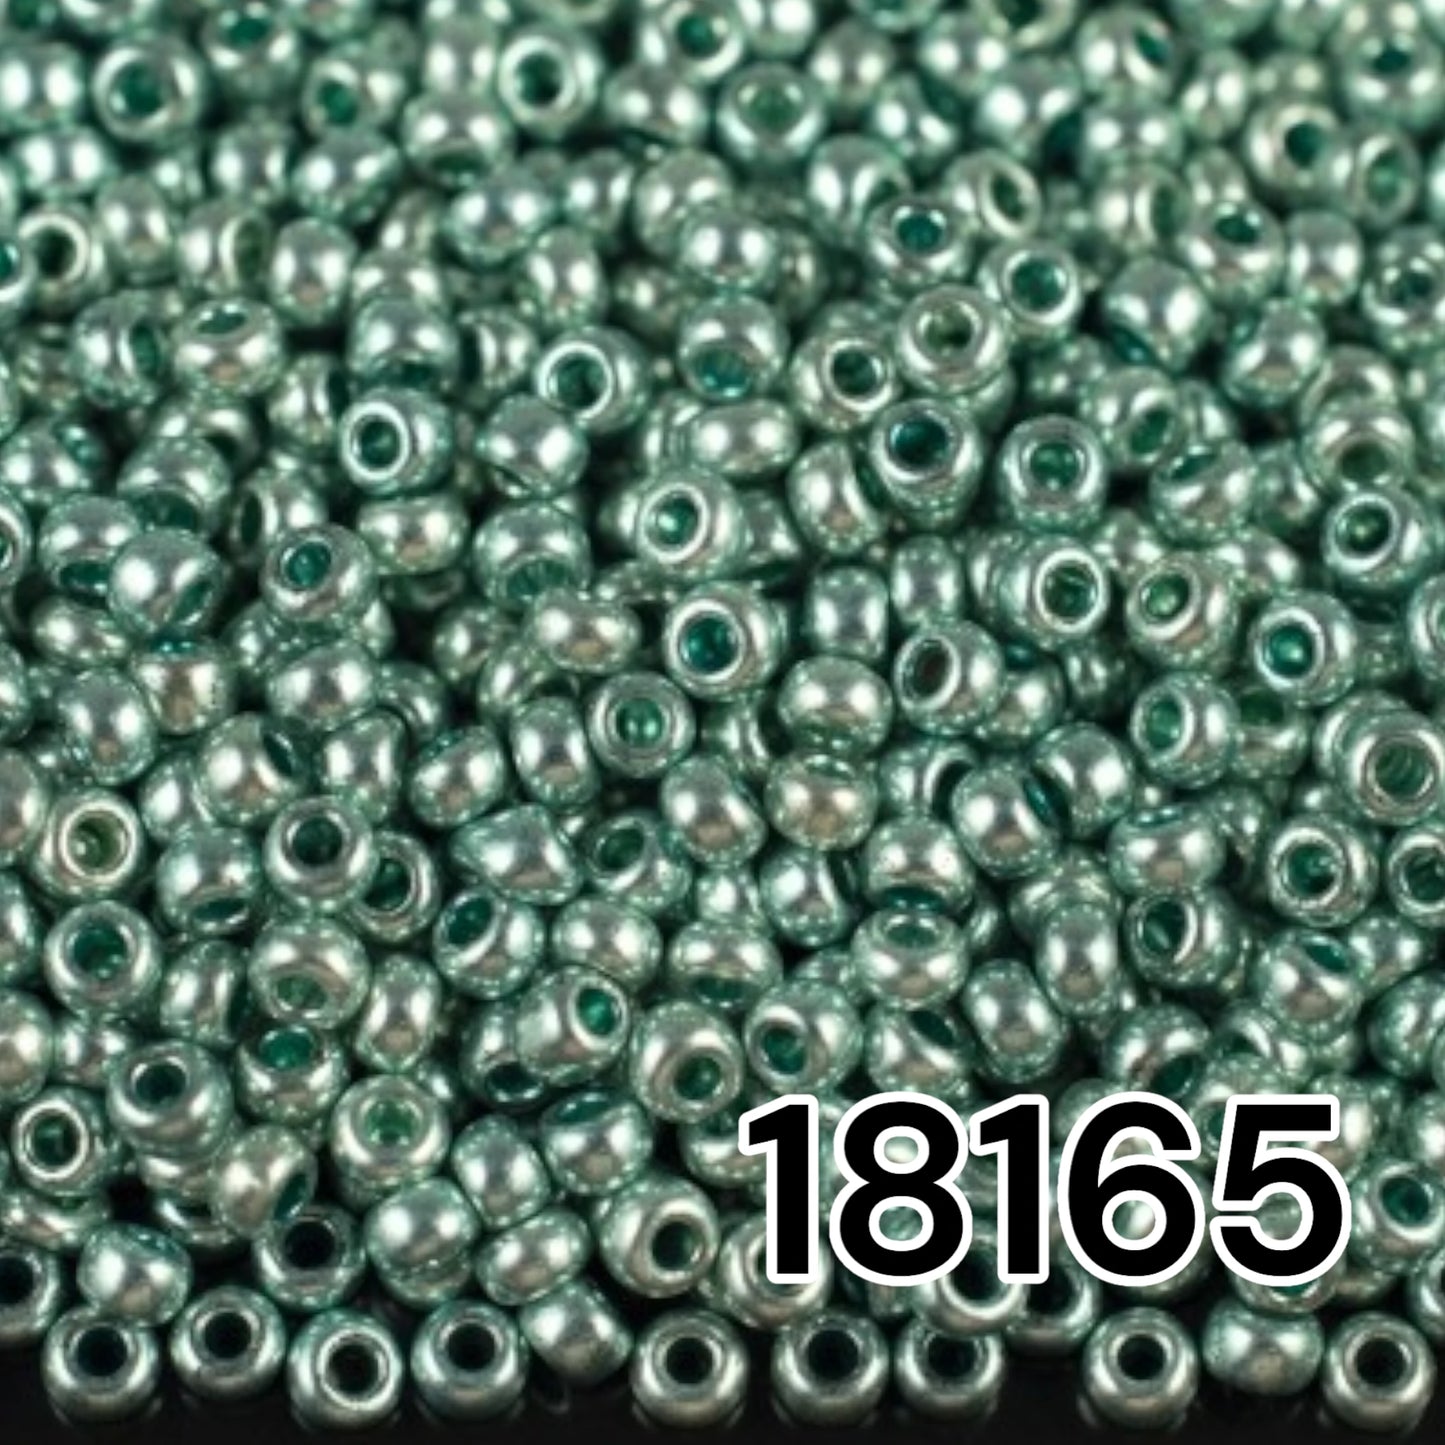 18165 Rocailles tchèques PRECIOSA rondes 10/0 Turquoise métallisé. Métallique - Solgel.